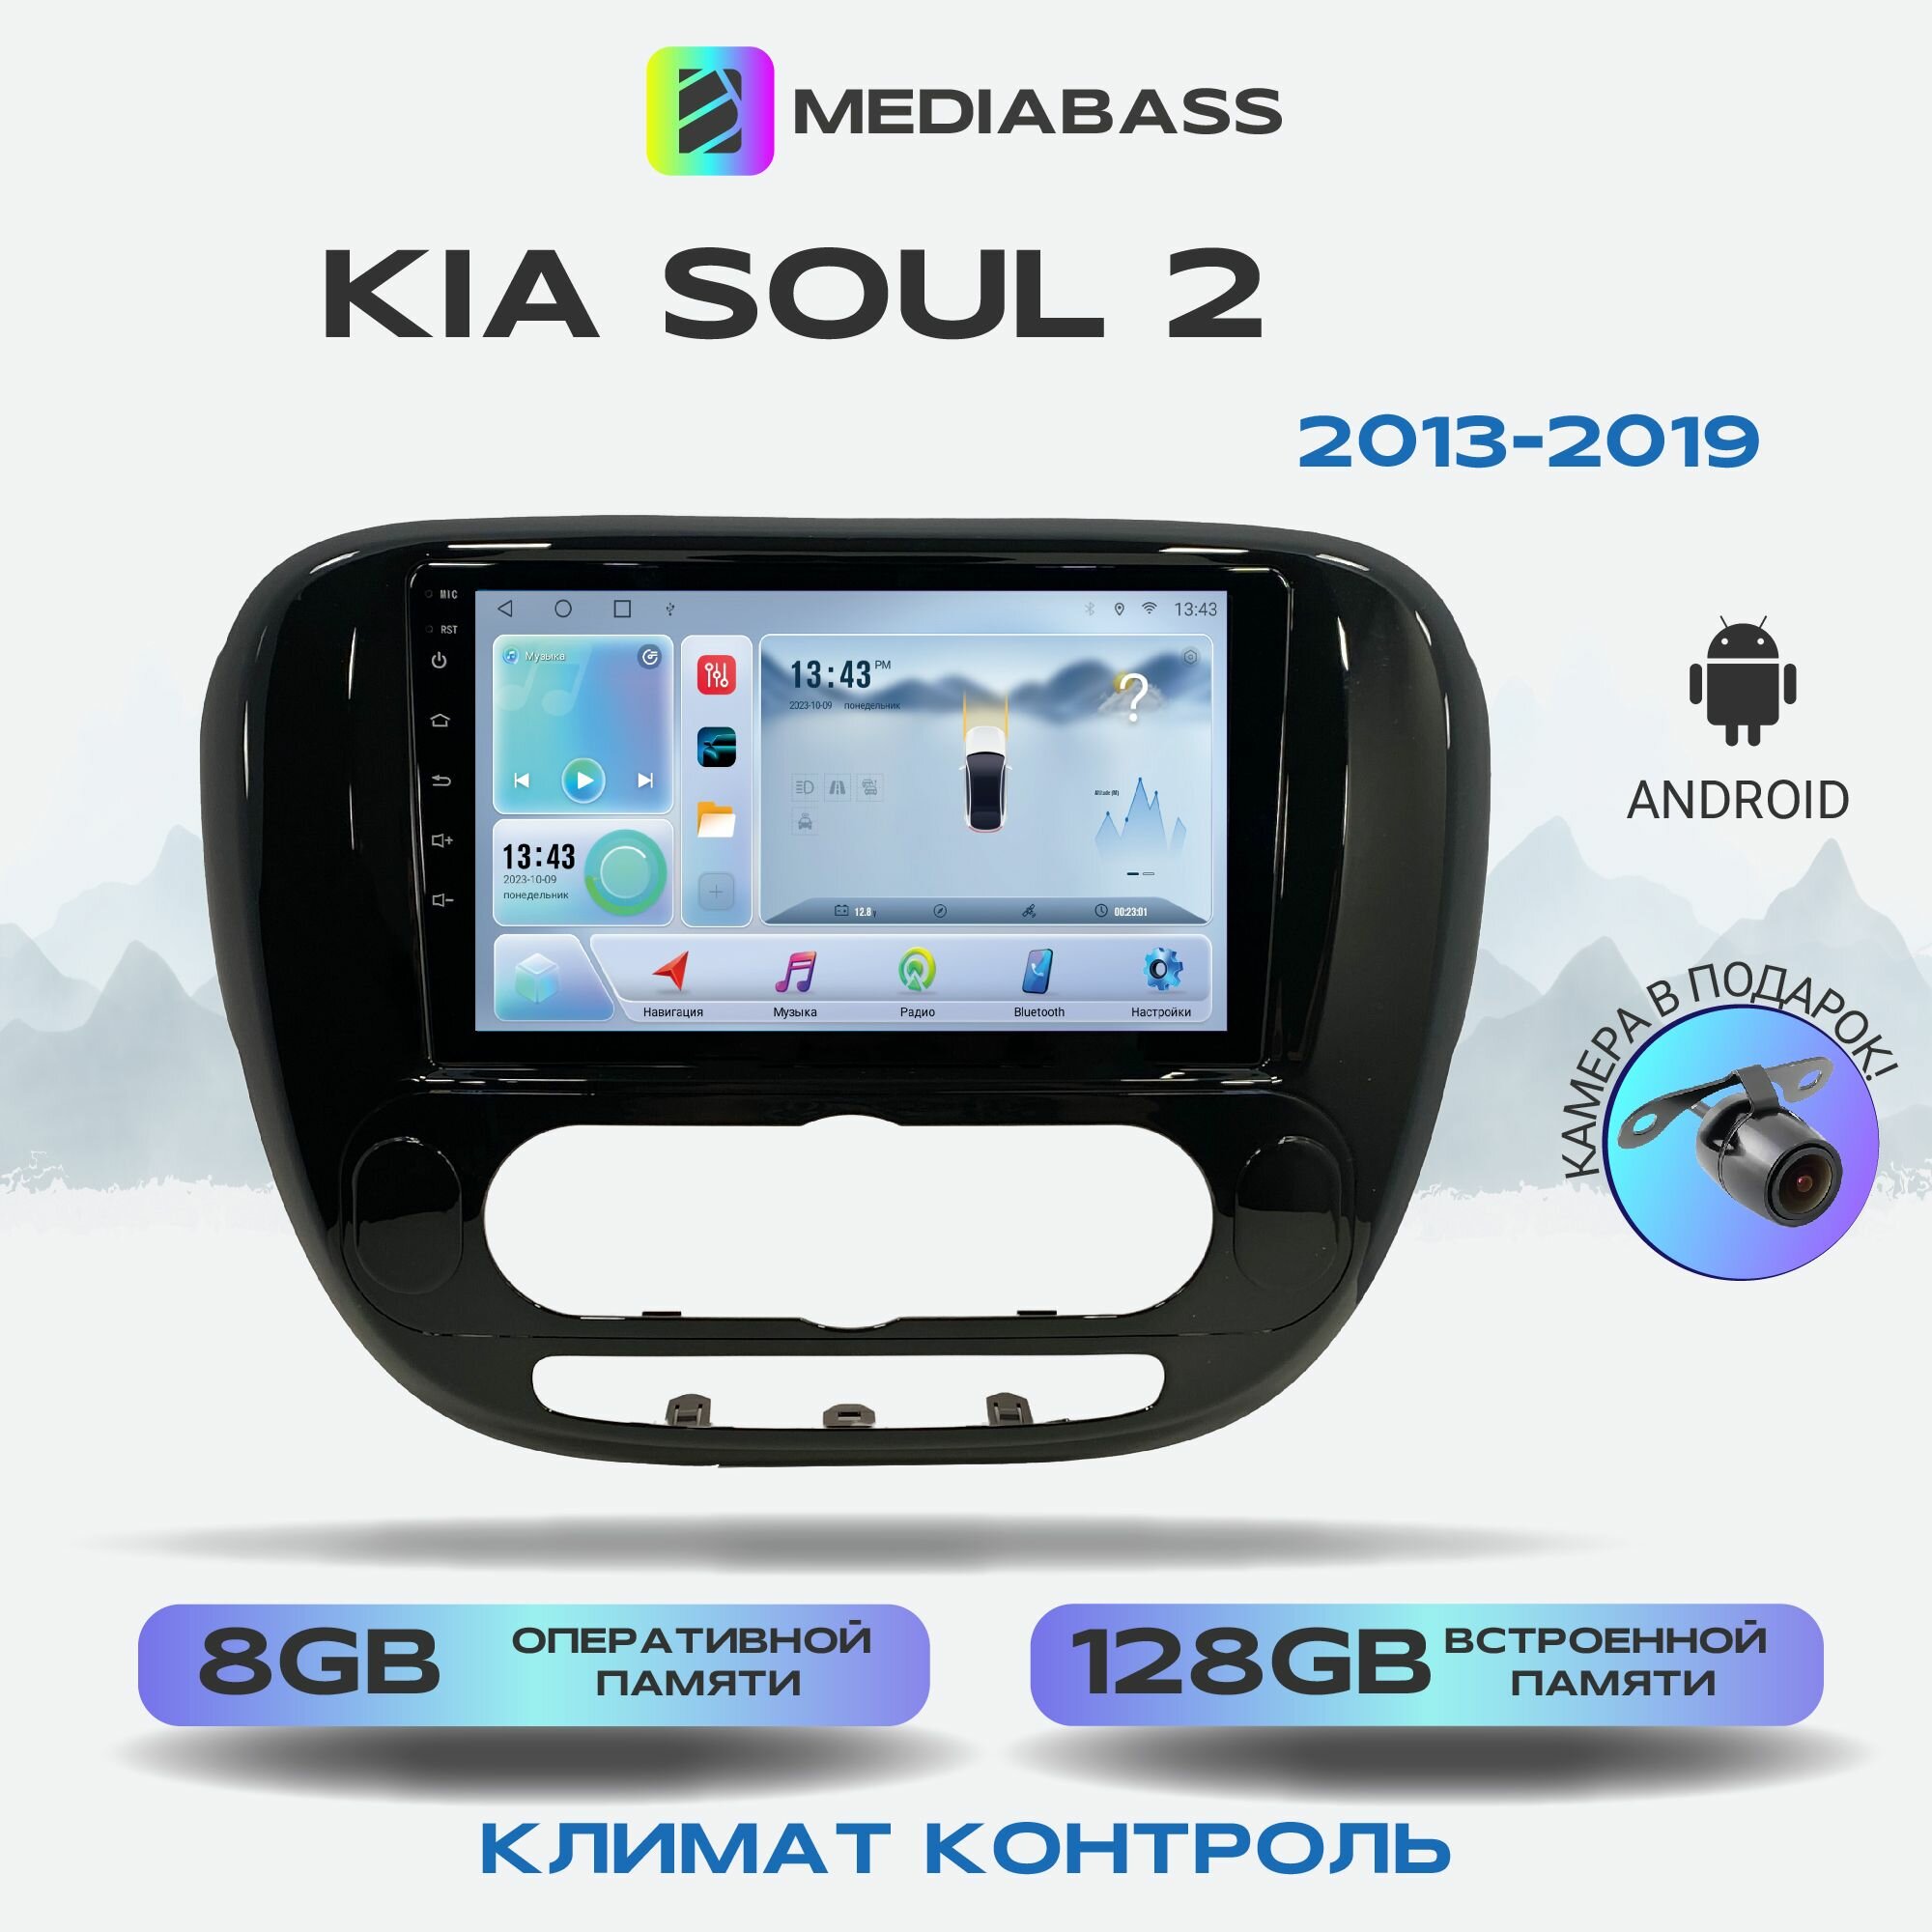 Автомагнитола Mediabass KIA Soul 2 2013-2019 Климат контроль, Android 12, 8/128ГБ, 8-ядерный процессор, DSP, 4G модем, голосовое управление, чип-усилитель TDA7851, 4G LTE / Киа Соул 2